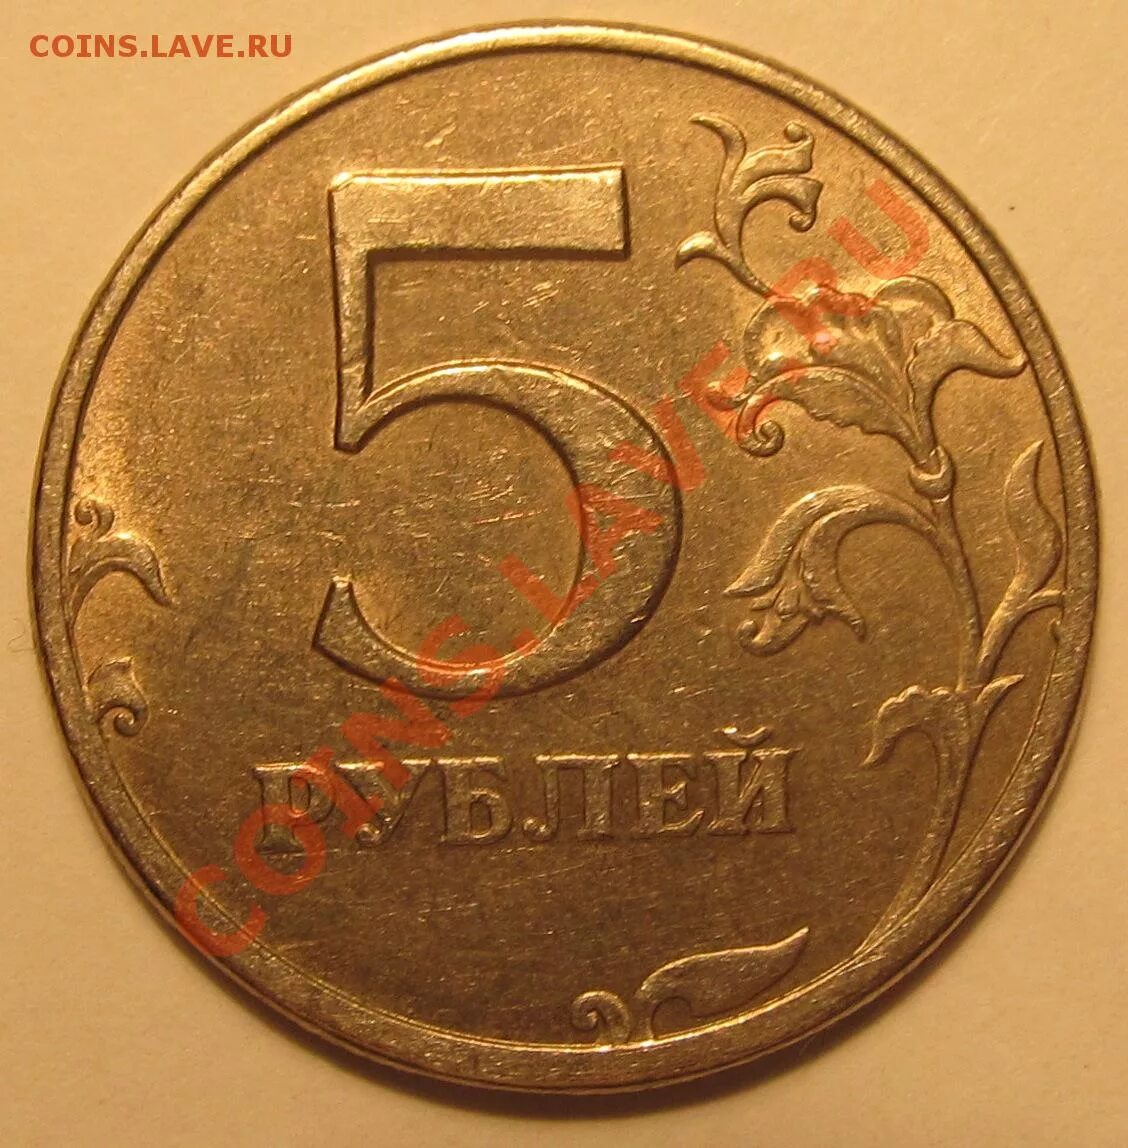 5 Рублей 1998 СПМД -шт. 2.21-2.22. Бракованная 5 рублей 1997 года. Монеты 2005 5$. 2 Рубля 1997 СПДМ золото.